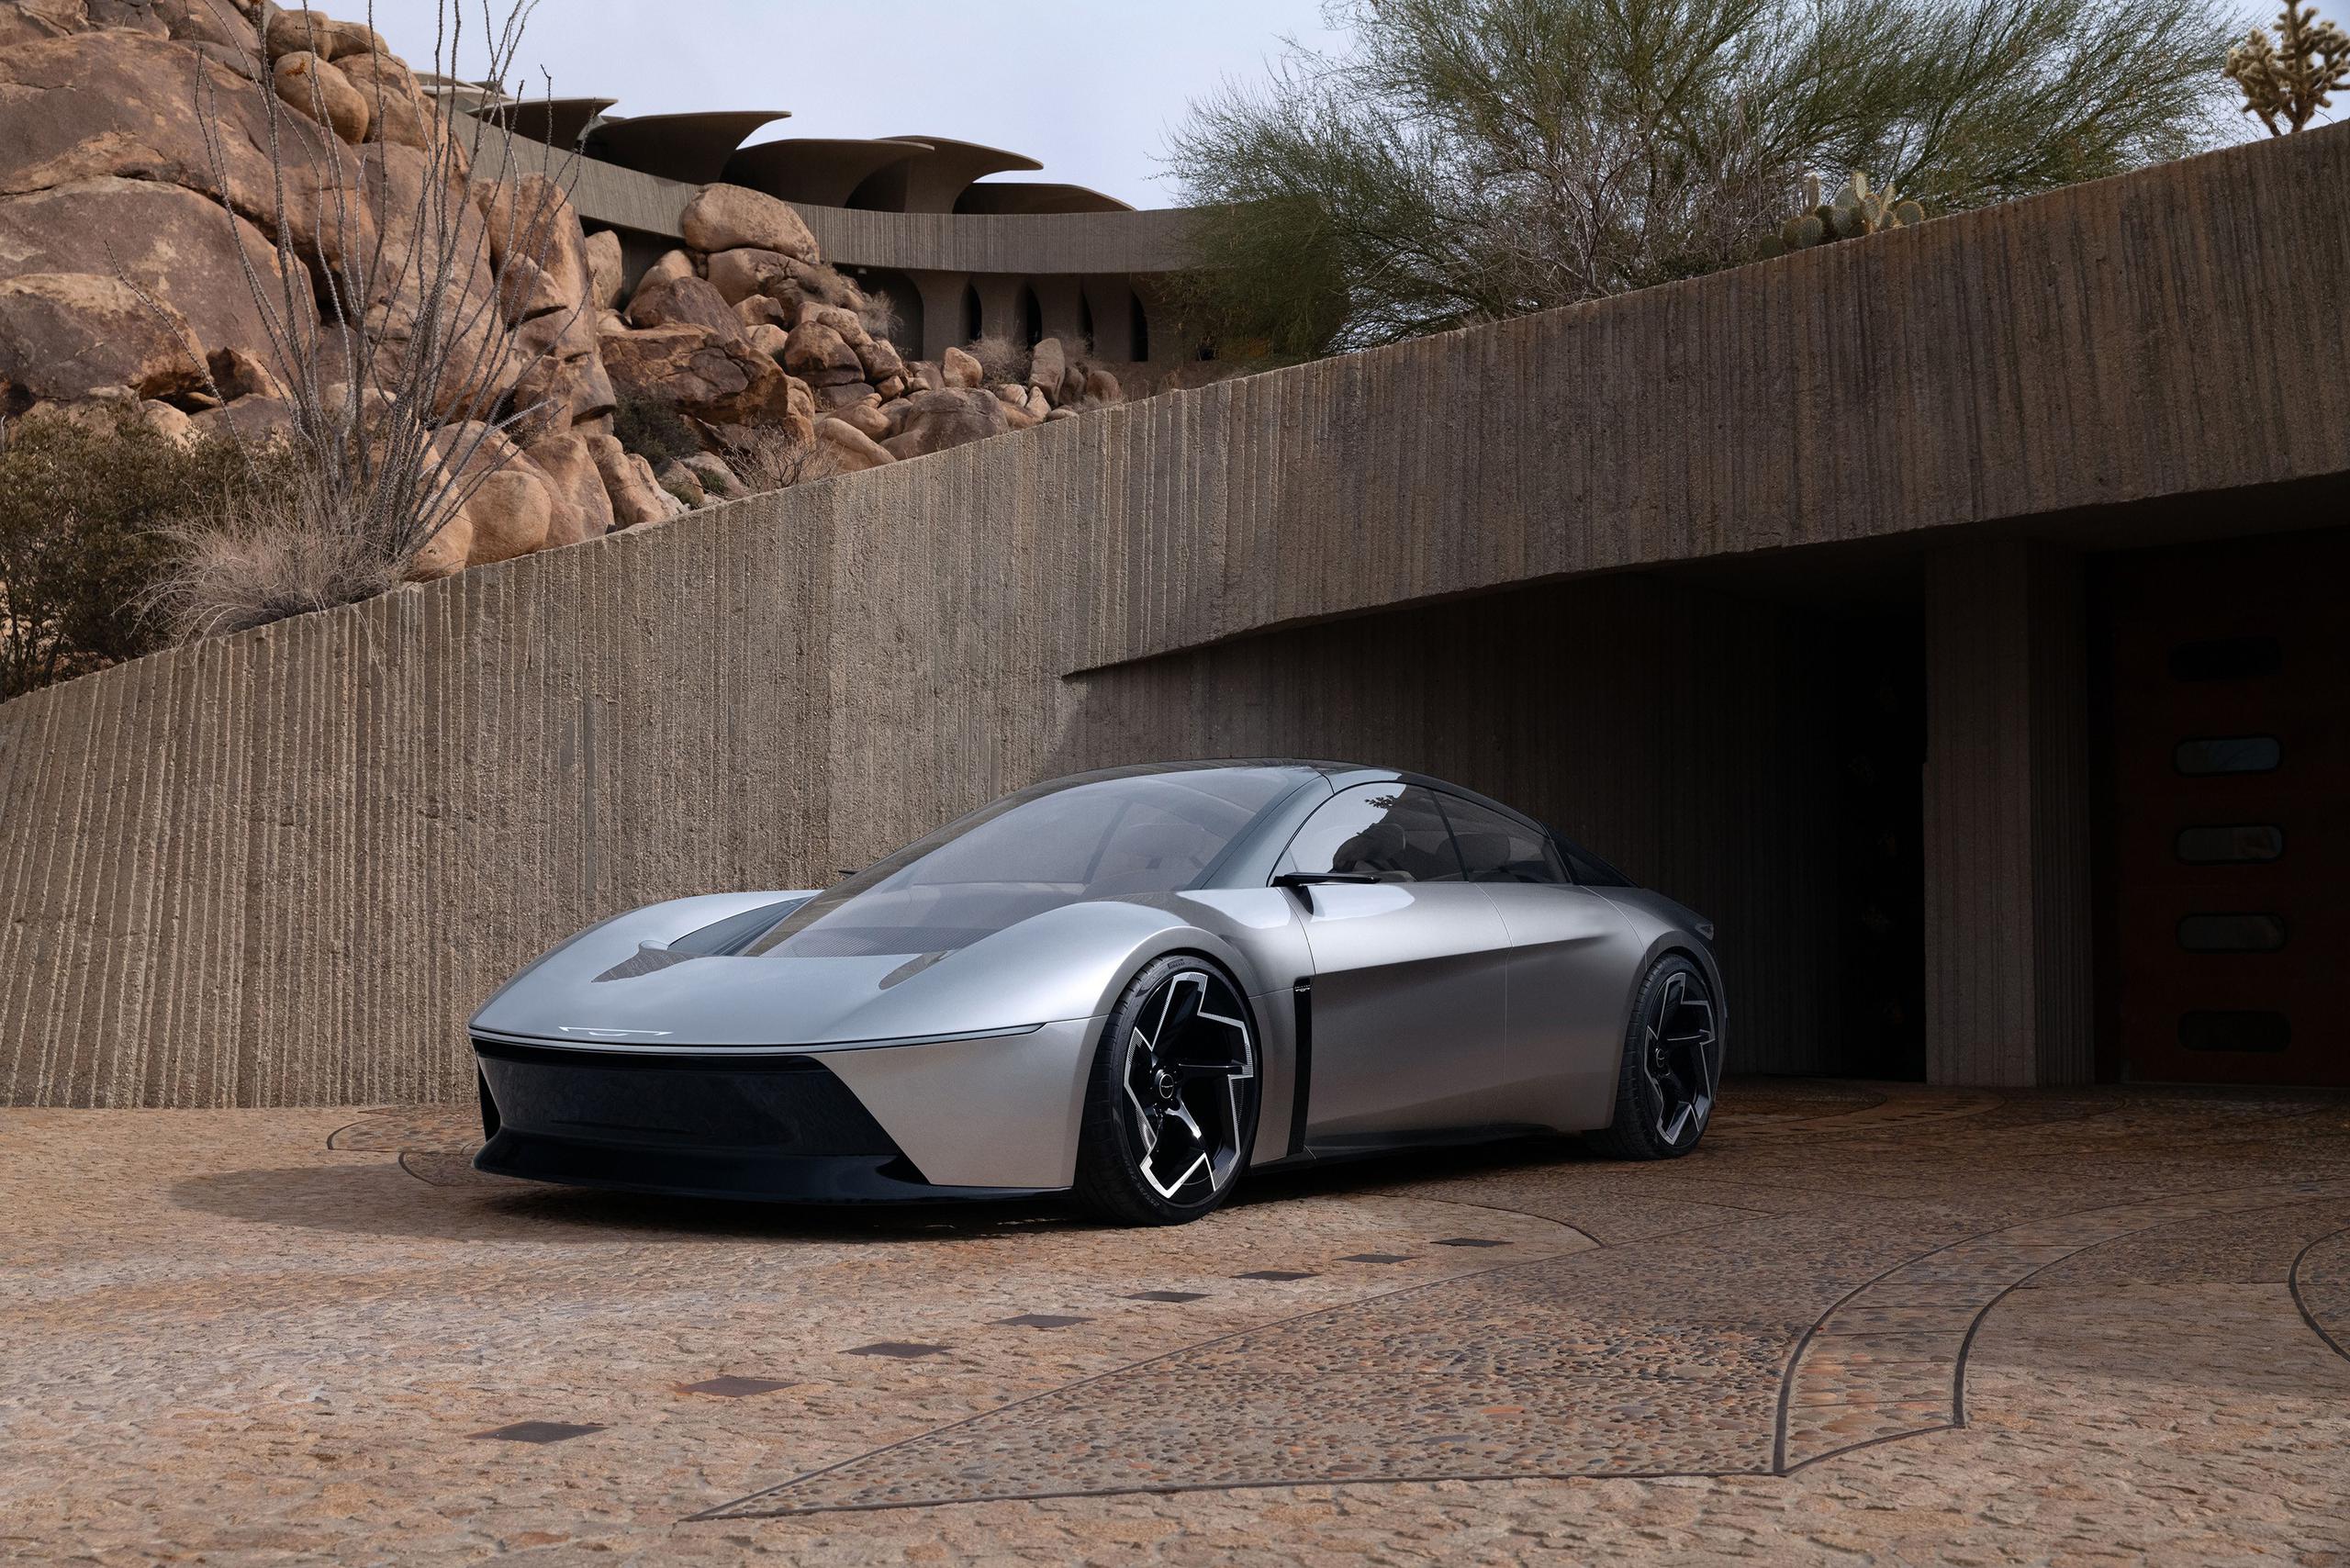 El vehículo destaca por sus líneas futuristas e incorpora nuevas tecnologías en desarrollo, como la conducción autónoma y baterías de litio-azufre.